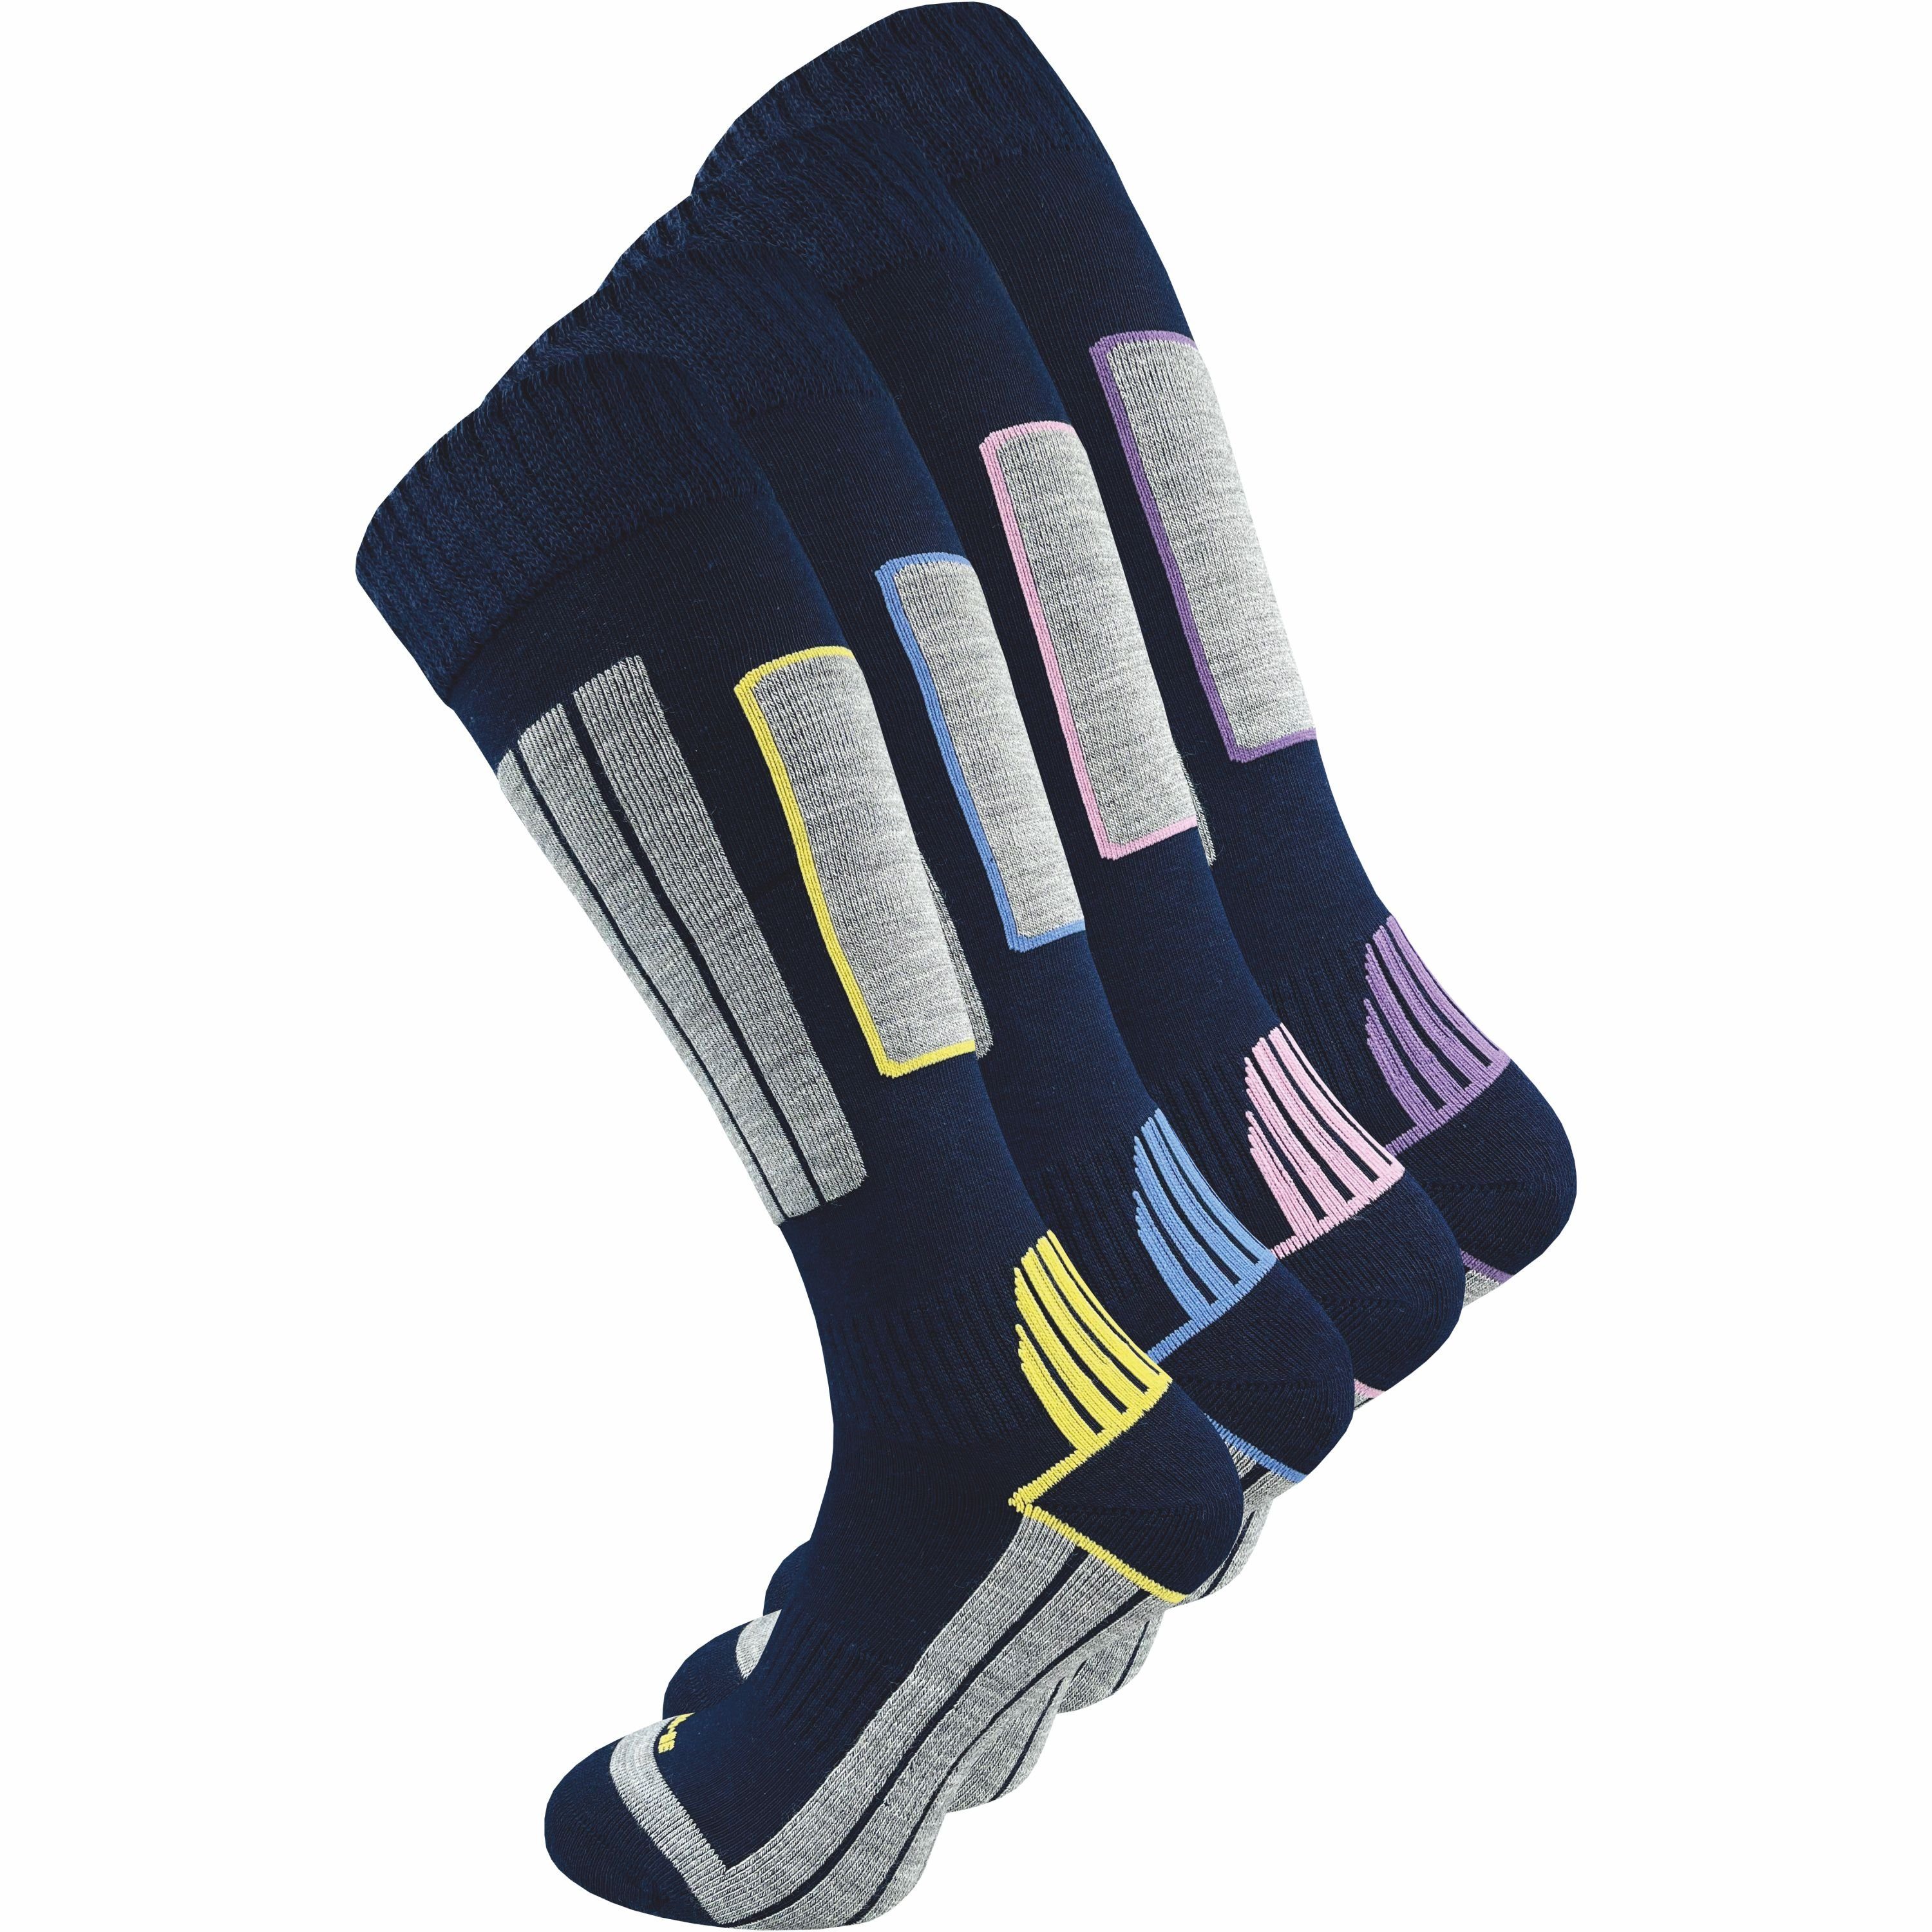 GAWILO Skisocken für Damen mit wärmender Wolle und spezieller Funktionspolsterung (4 Paar) Spezielle Konstruktion sorgt für Stabilität & hält Füße warm & trocken